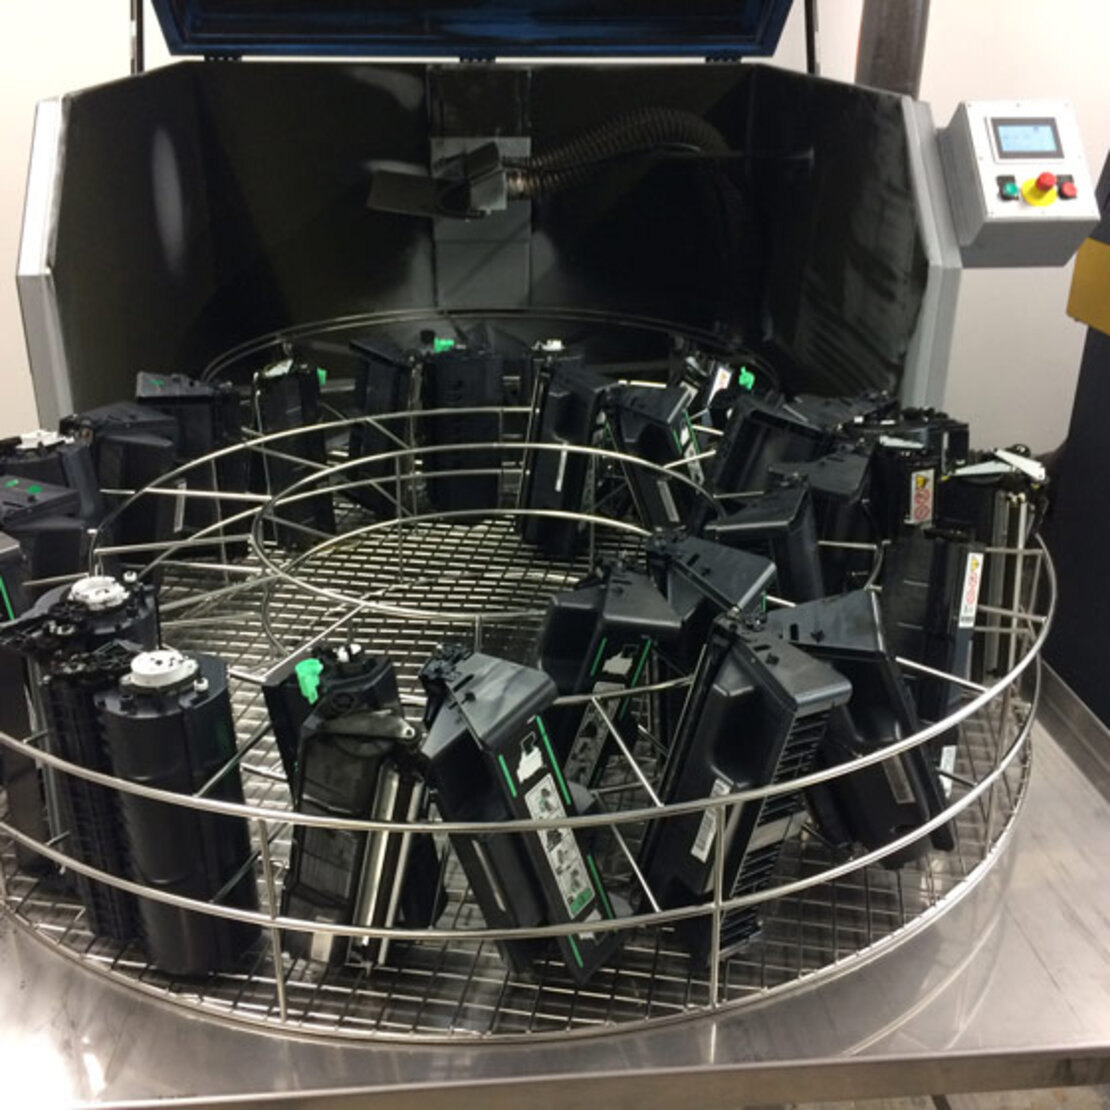  TurboClean 1500 máquina automática de limpieza y vaciado para cartuchos de tóner